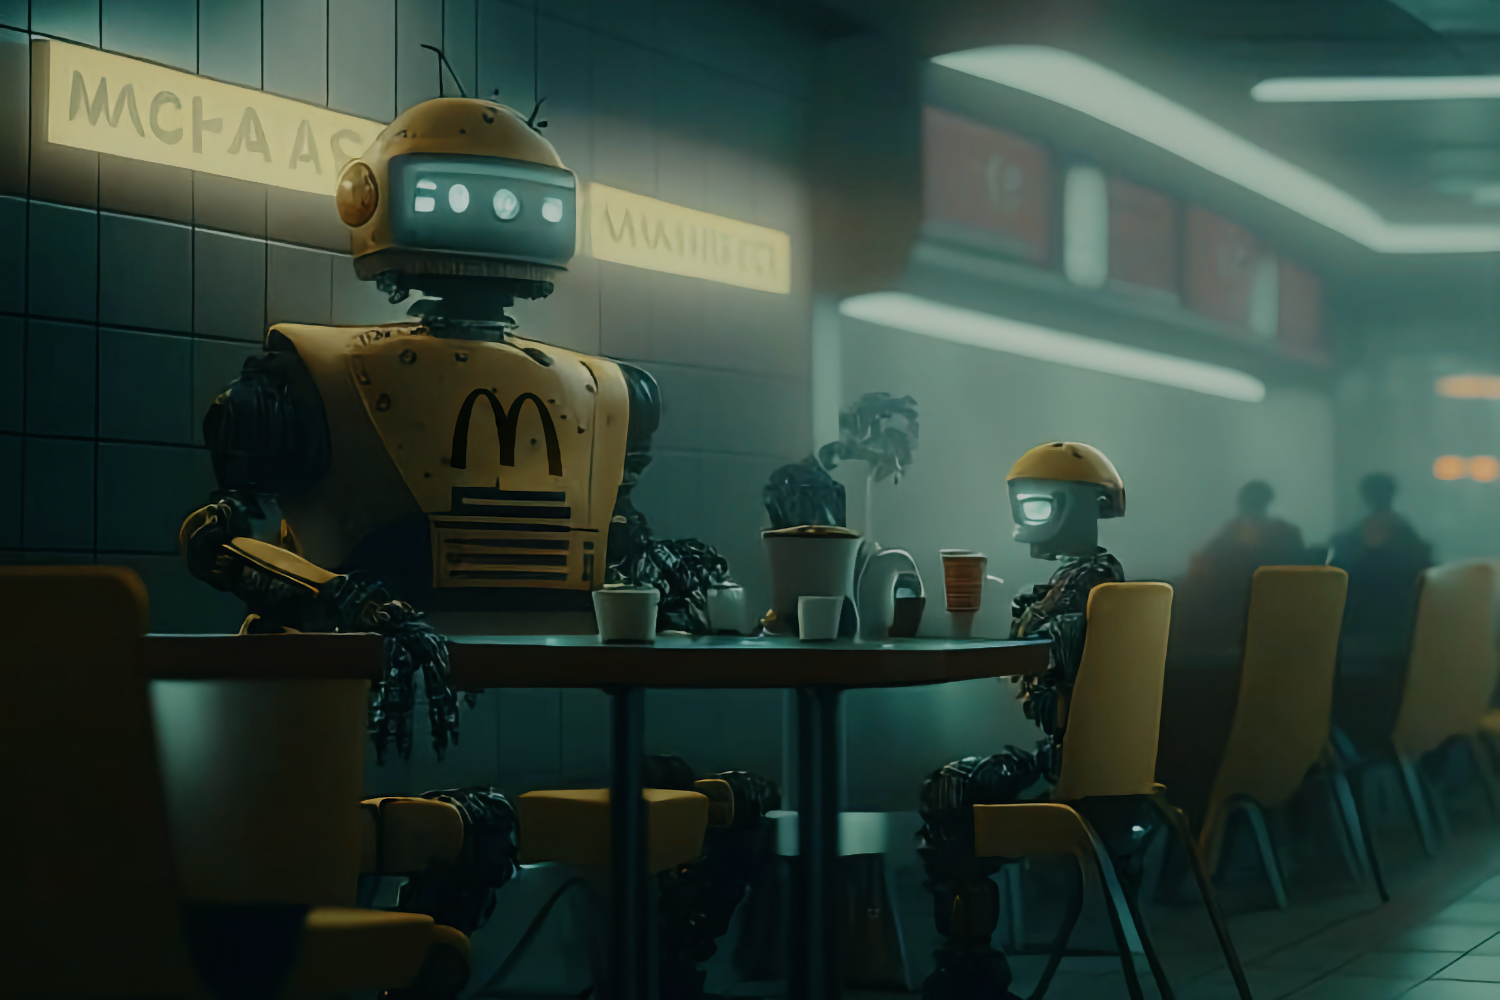 Открылся первый McDonalds, в котором роботы заменили почти всех людей-сотрудников